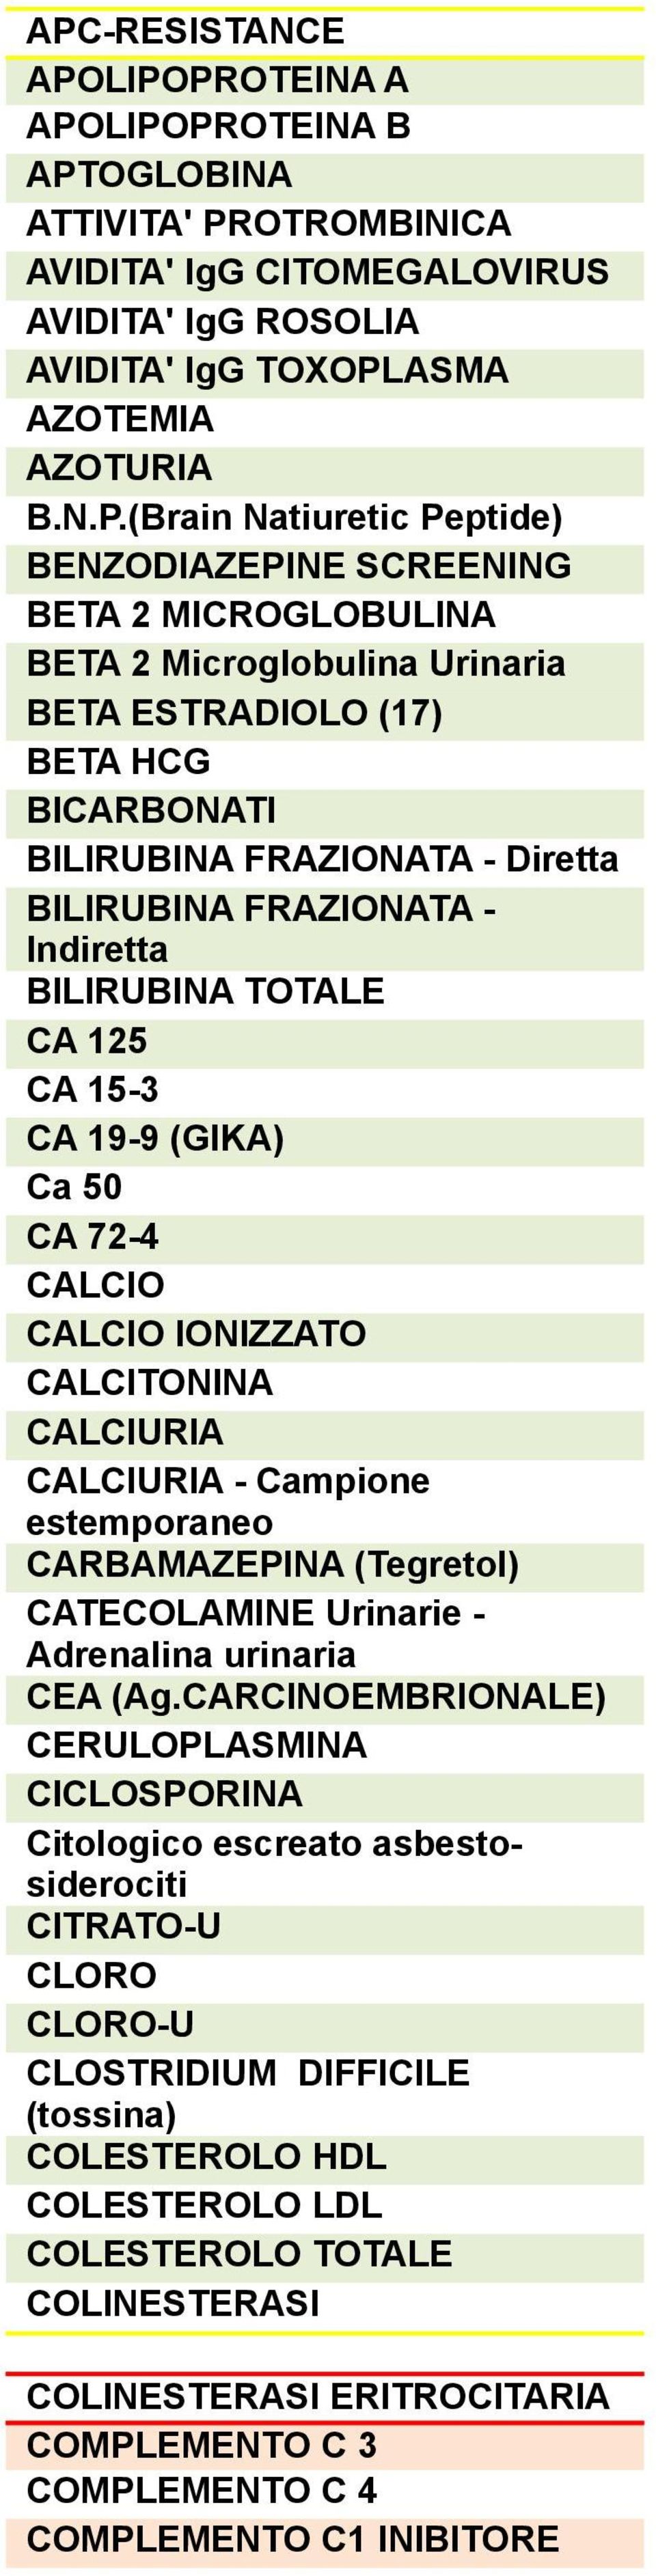 Indiretta BILIRUBINA TOTALE CA 125 CA 15-3 CA 19-9 (GIKA) Ca 50 CA 72-4 CALCIO CALCIO IONIZZATO CALCITONINA CALCIURIA CALCIURIA - Campione estemporaneo CARBAMAZEPINA (Tegretol) CATECOLAMINE Urinarie